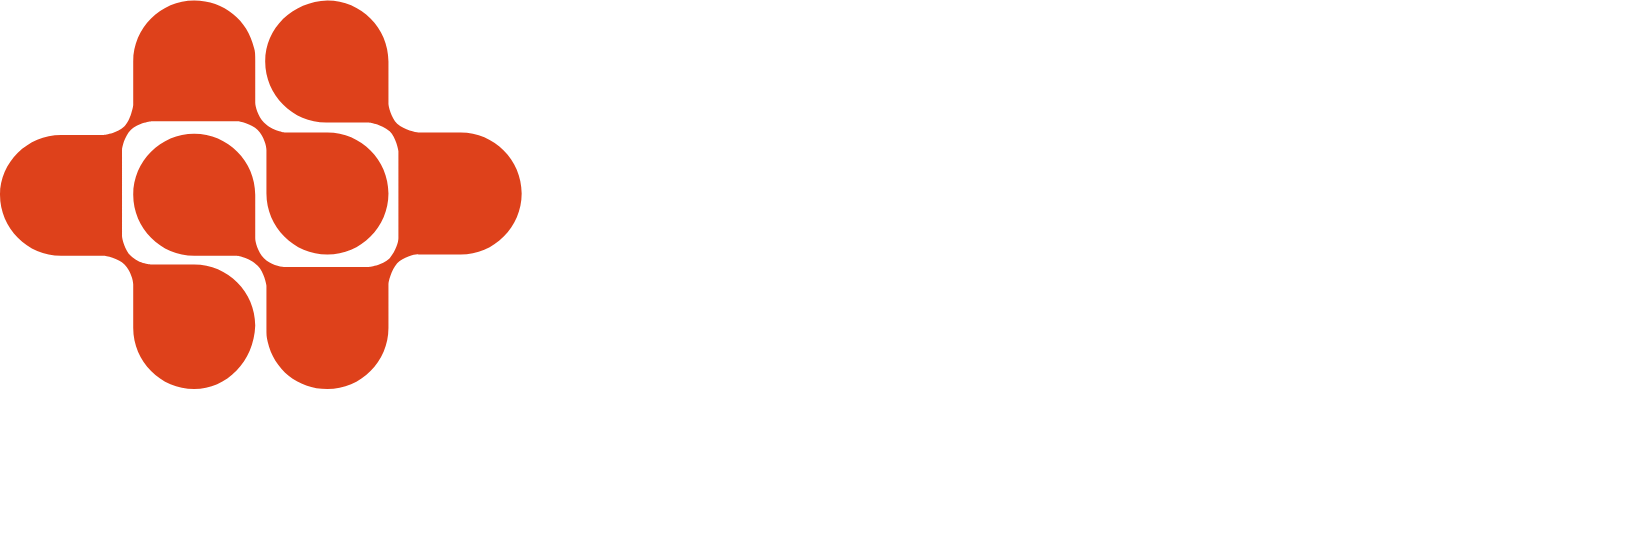 Endava logo grand pour les fonds sombres (PNG transparent)